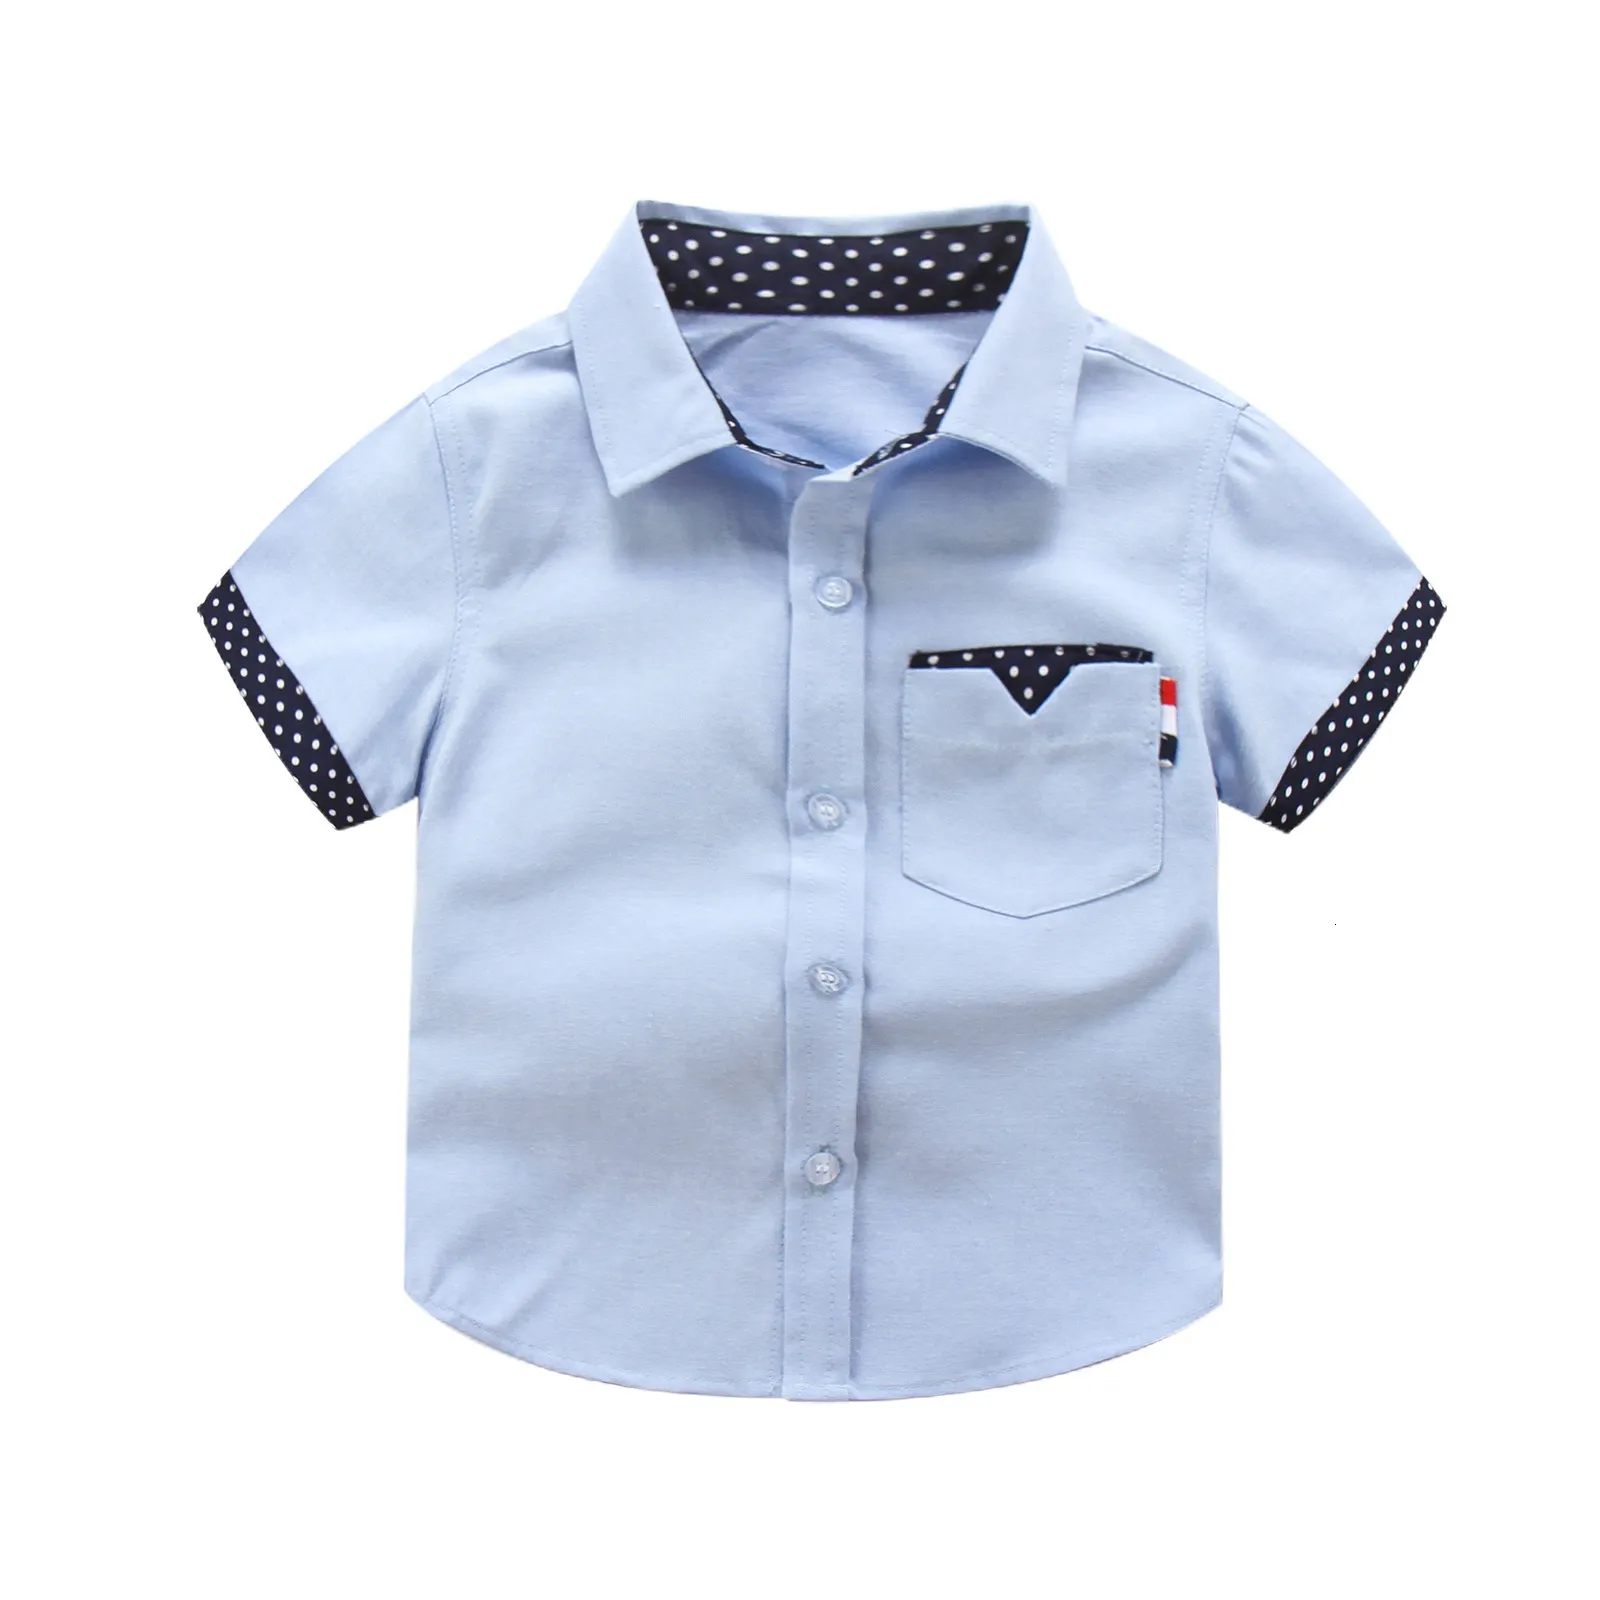 キッズシャツIenens Summer Kids Boys Gentlemen Shirt Tops Clothers Bay Boy Formal Cotton Smoreves Top Tshirt Clothing Blouse 230331